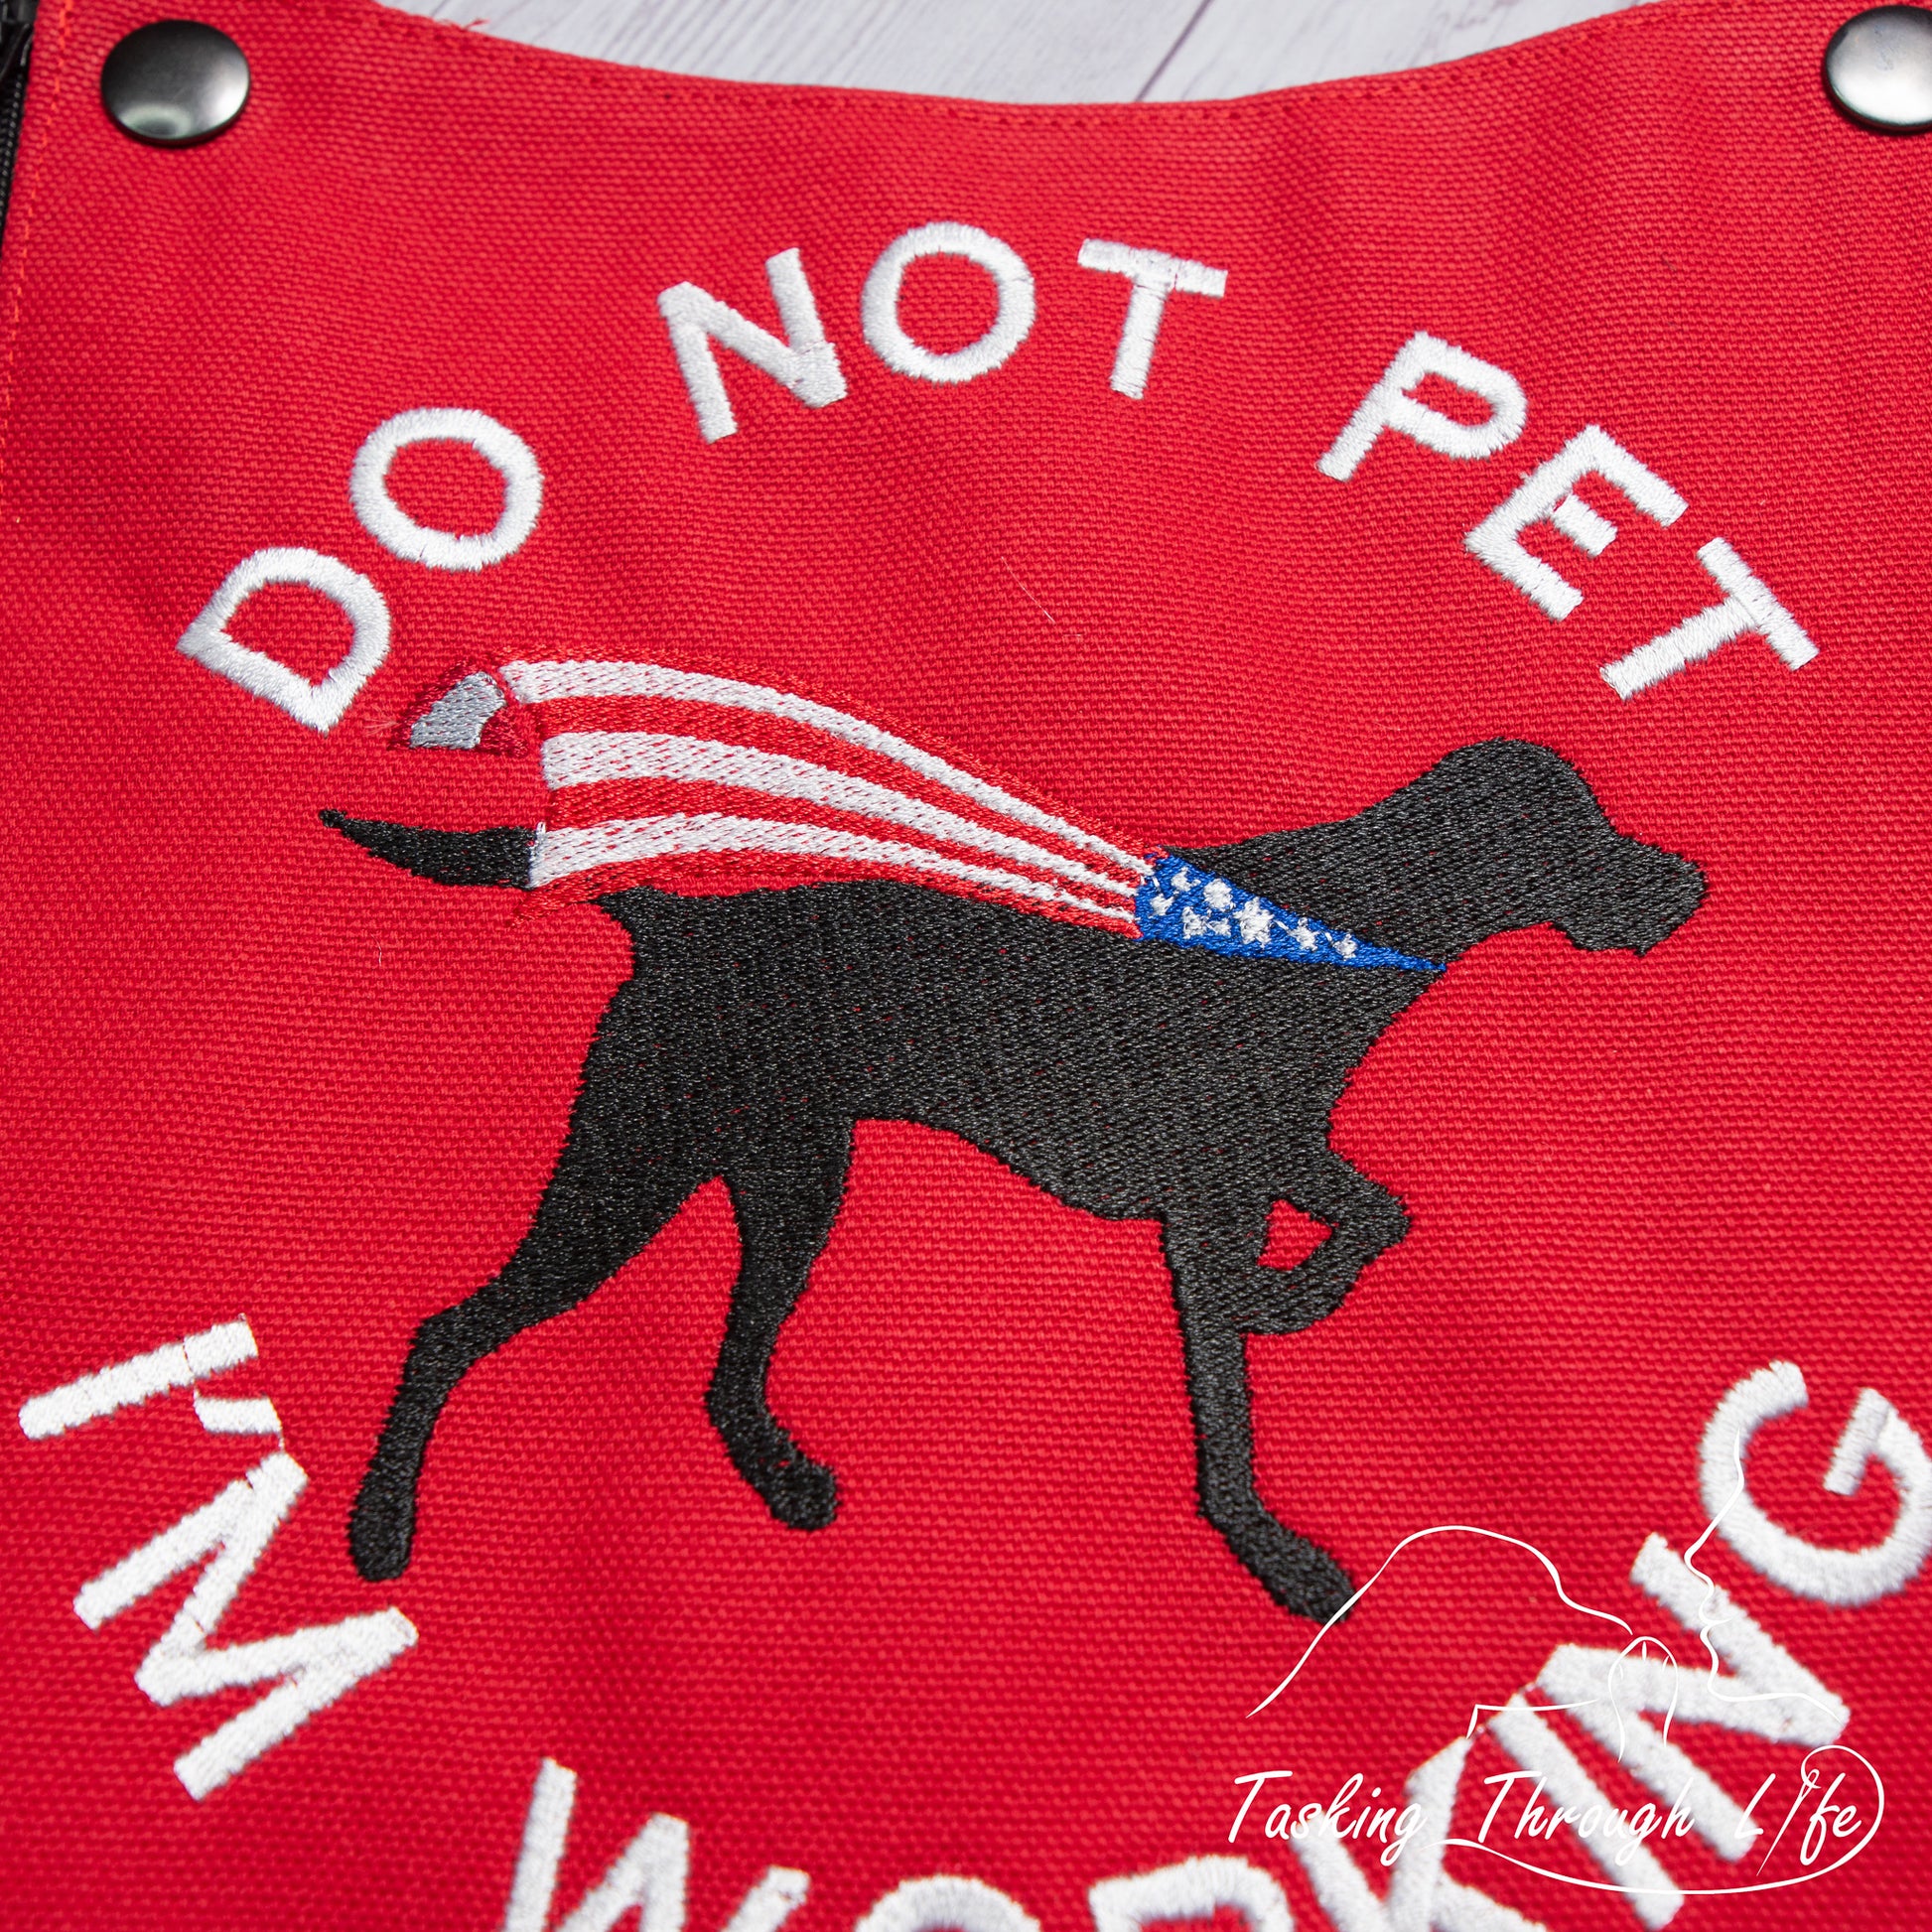 Service Dog Blue Velcro Dog Vest Patch